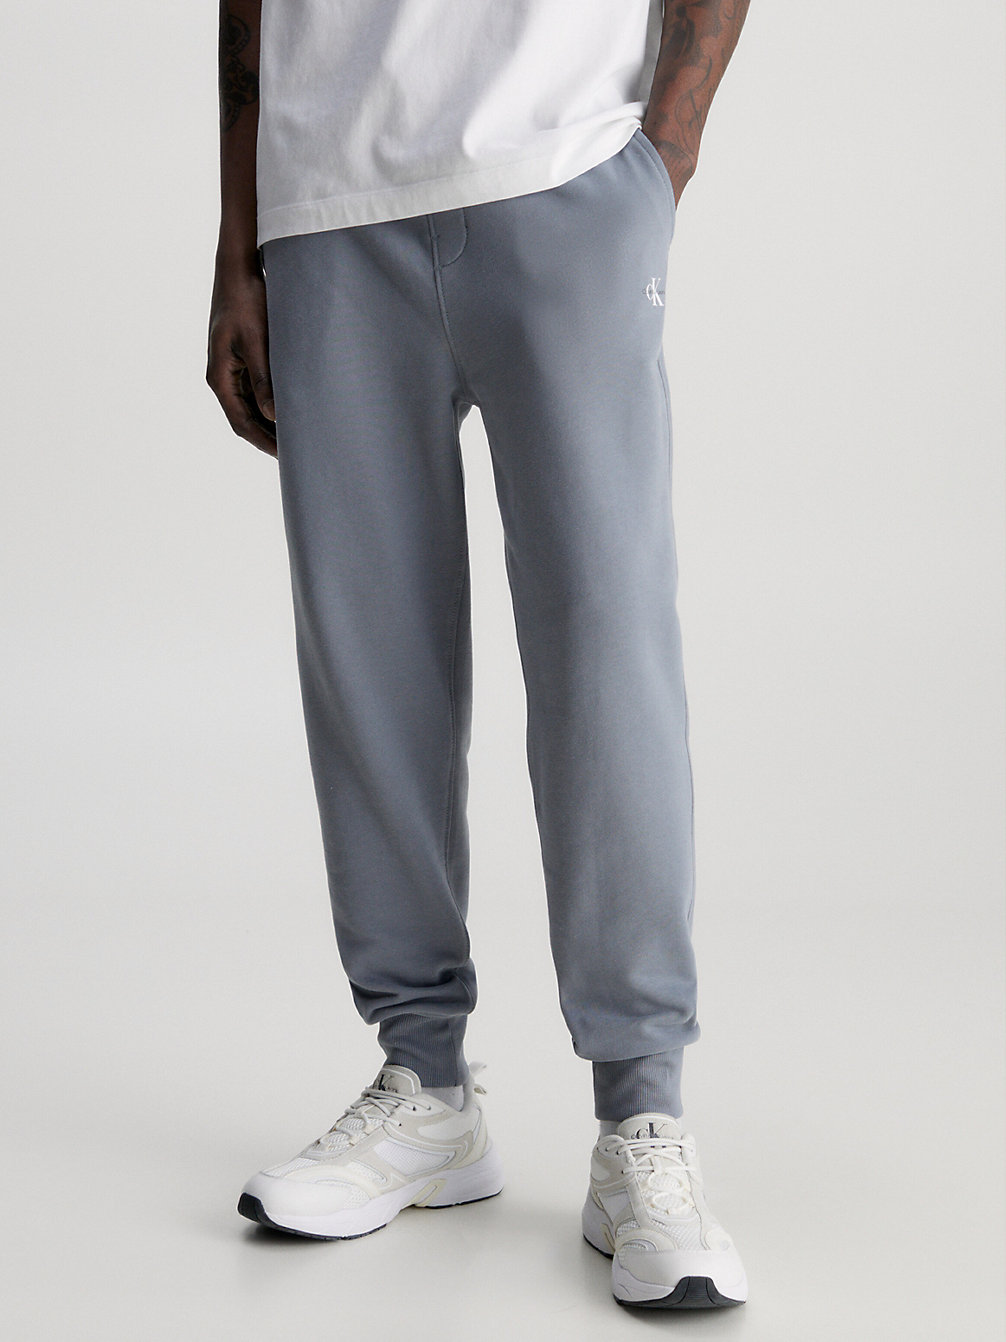 OVERCAST GREY Pantalon De Jogging Avec Monogramme undefined hommes Calvin Klein